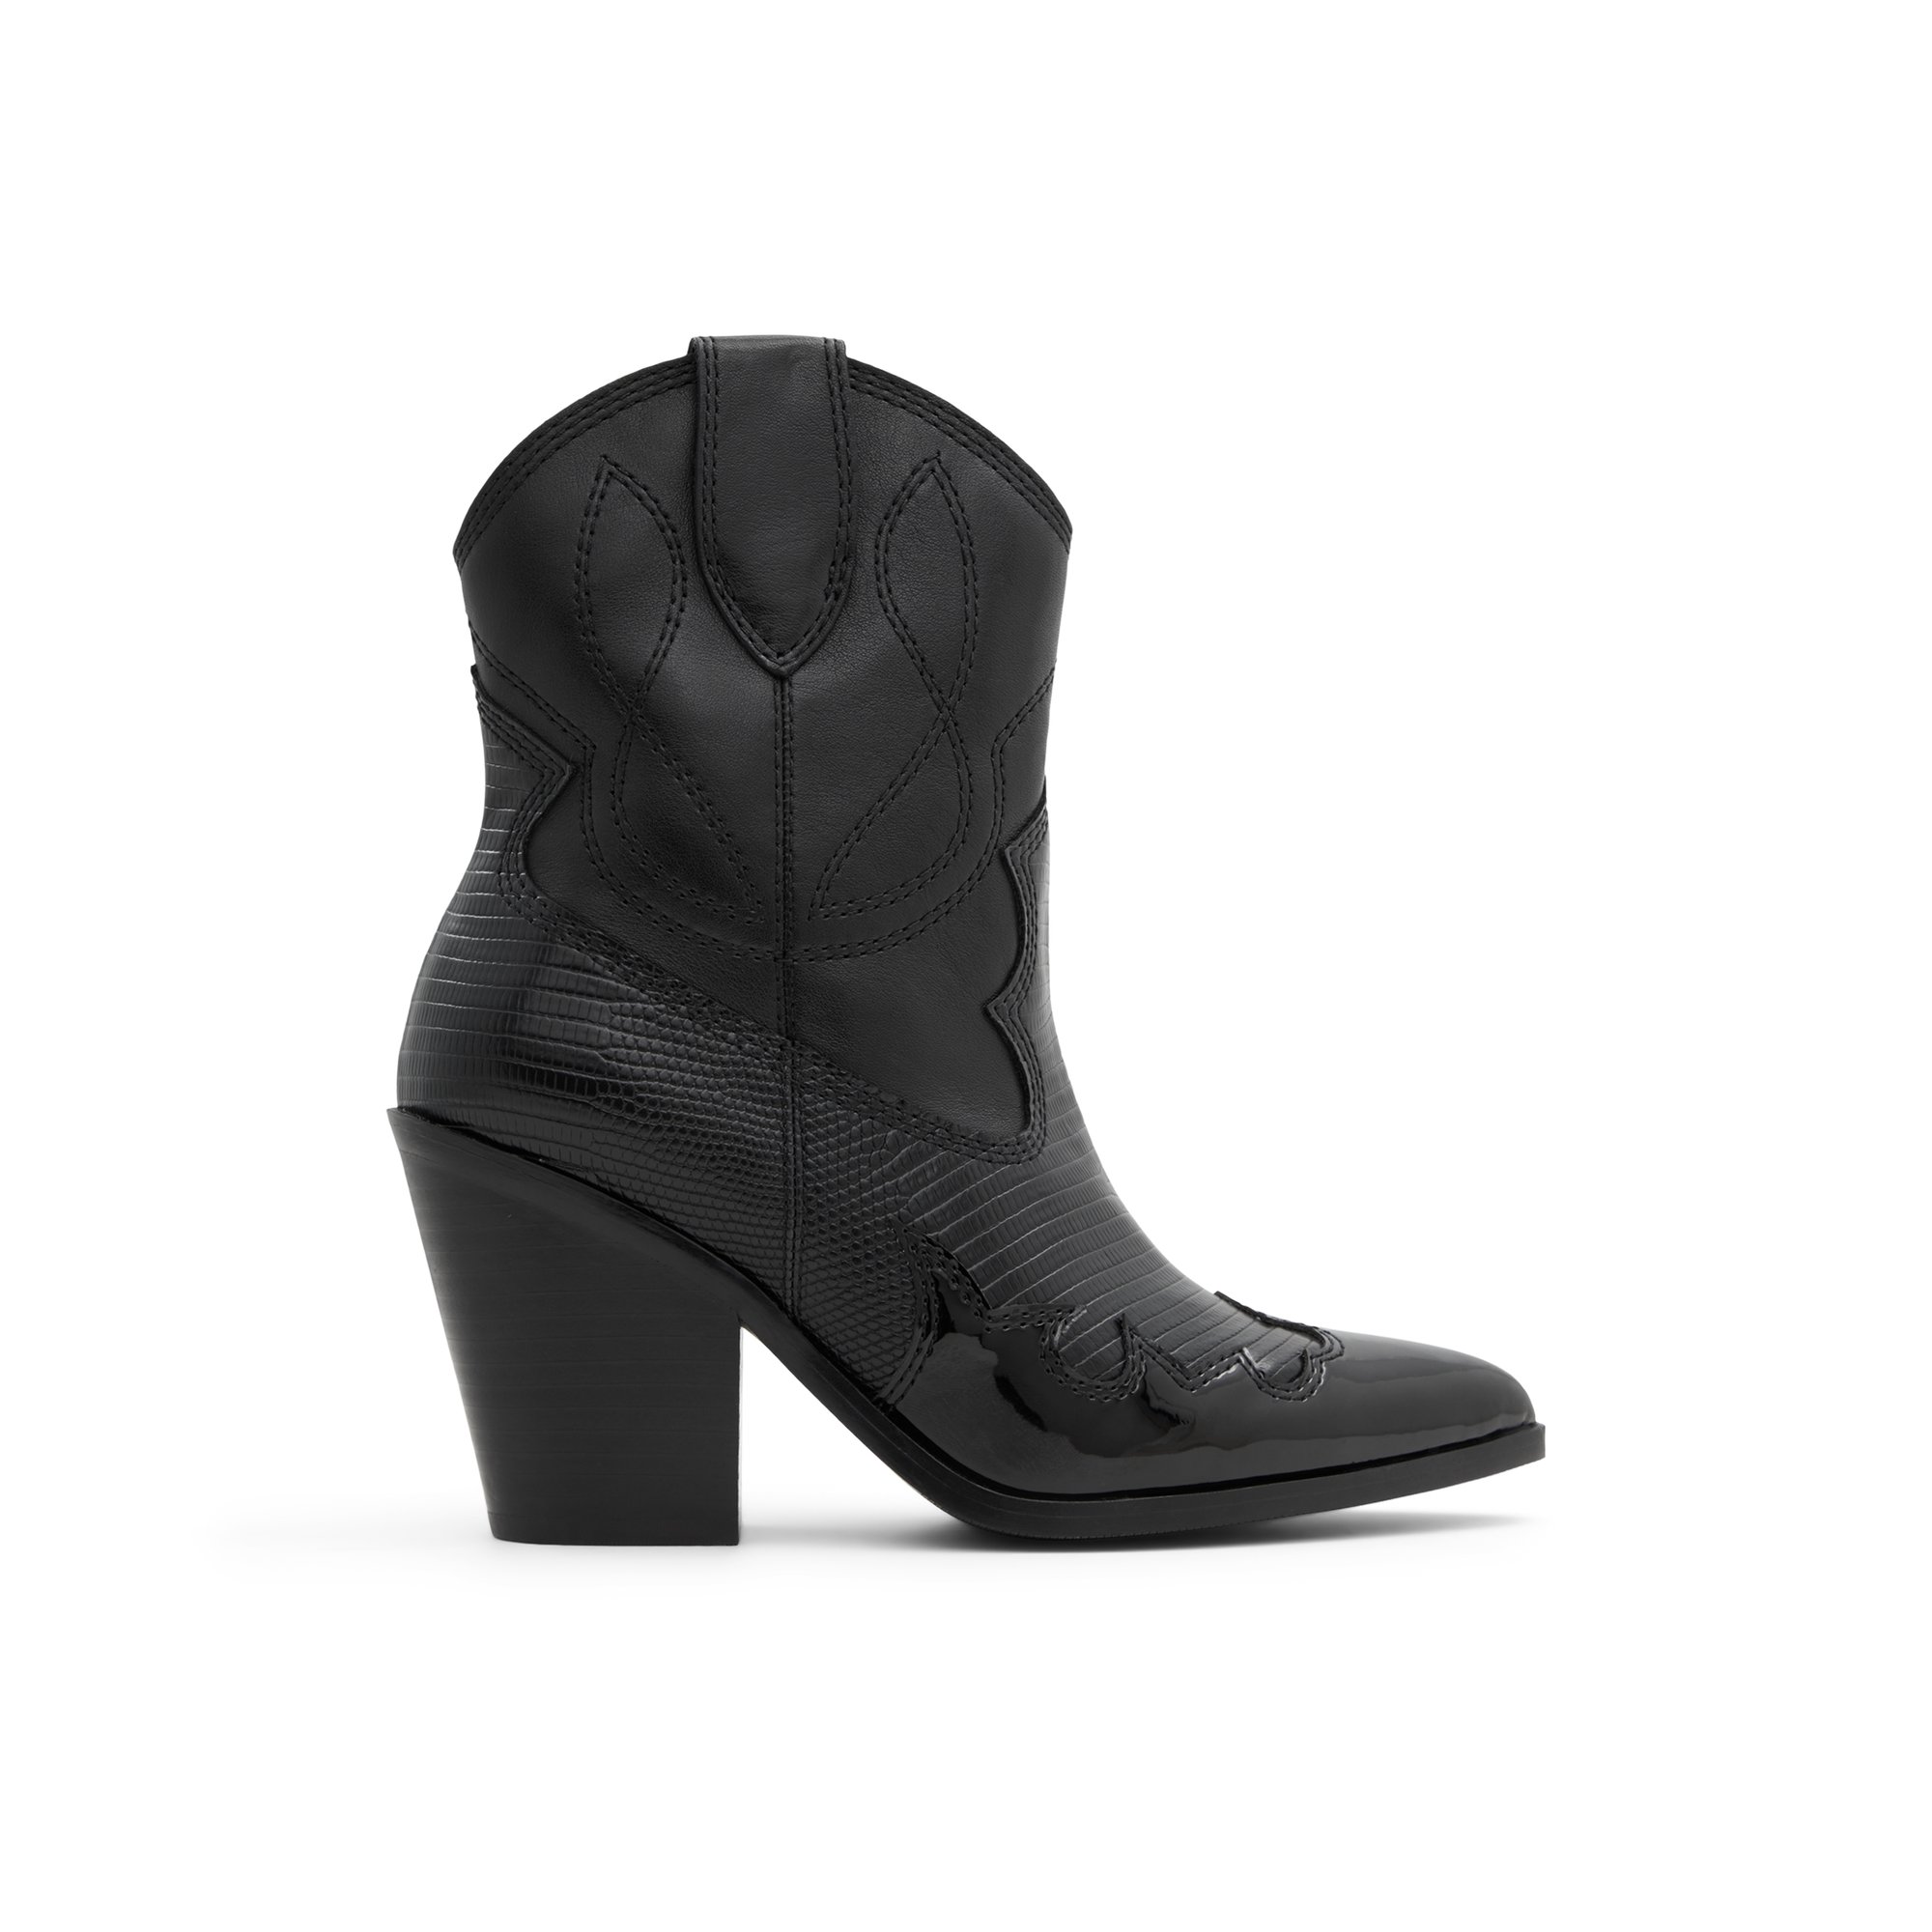 ALDO Nurodeo - Women's Ankle Boot - Black